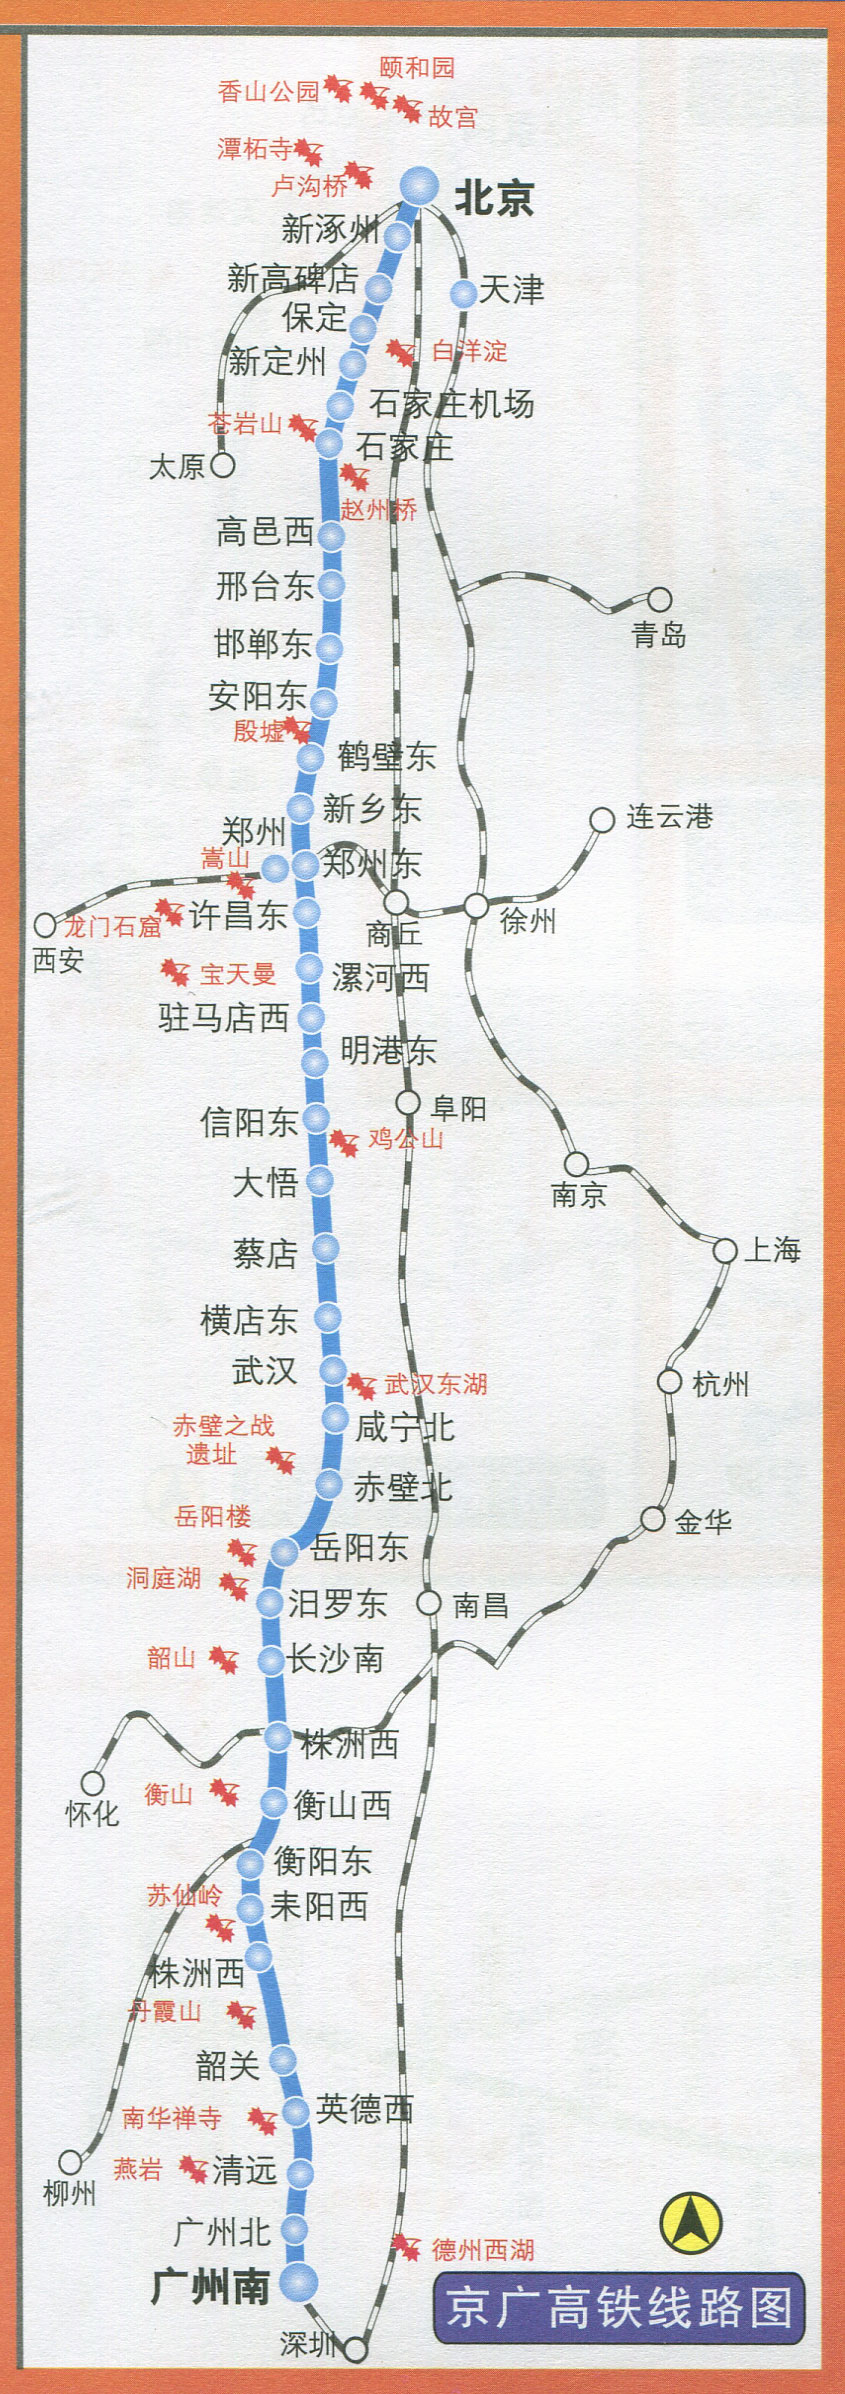 京广高铁线路图  栏目导航: 综合交通  轨道交通图  高铁线路图  铁路